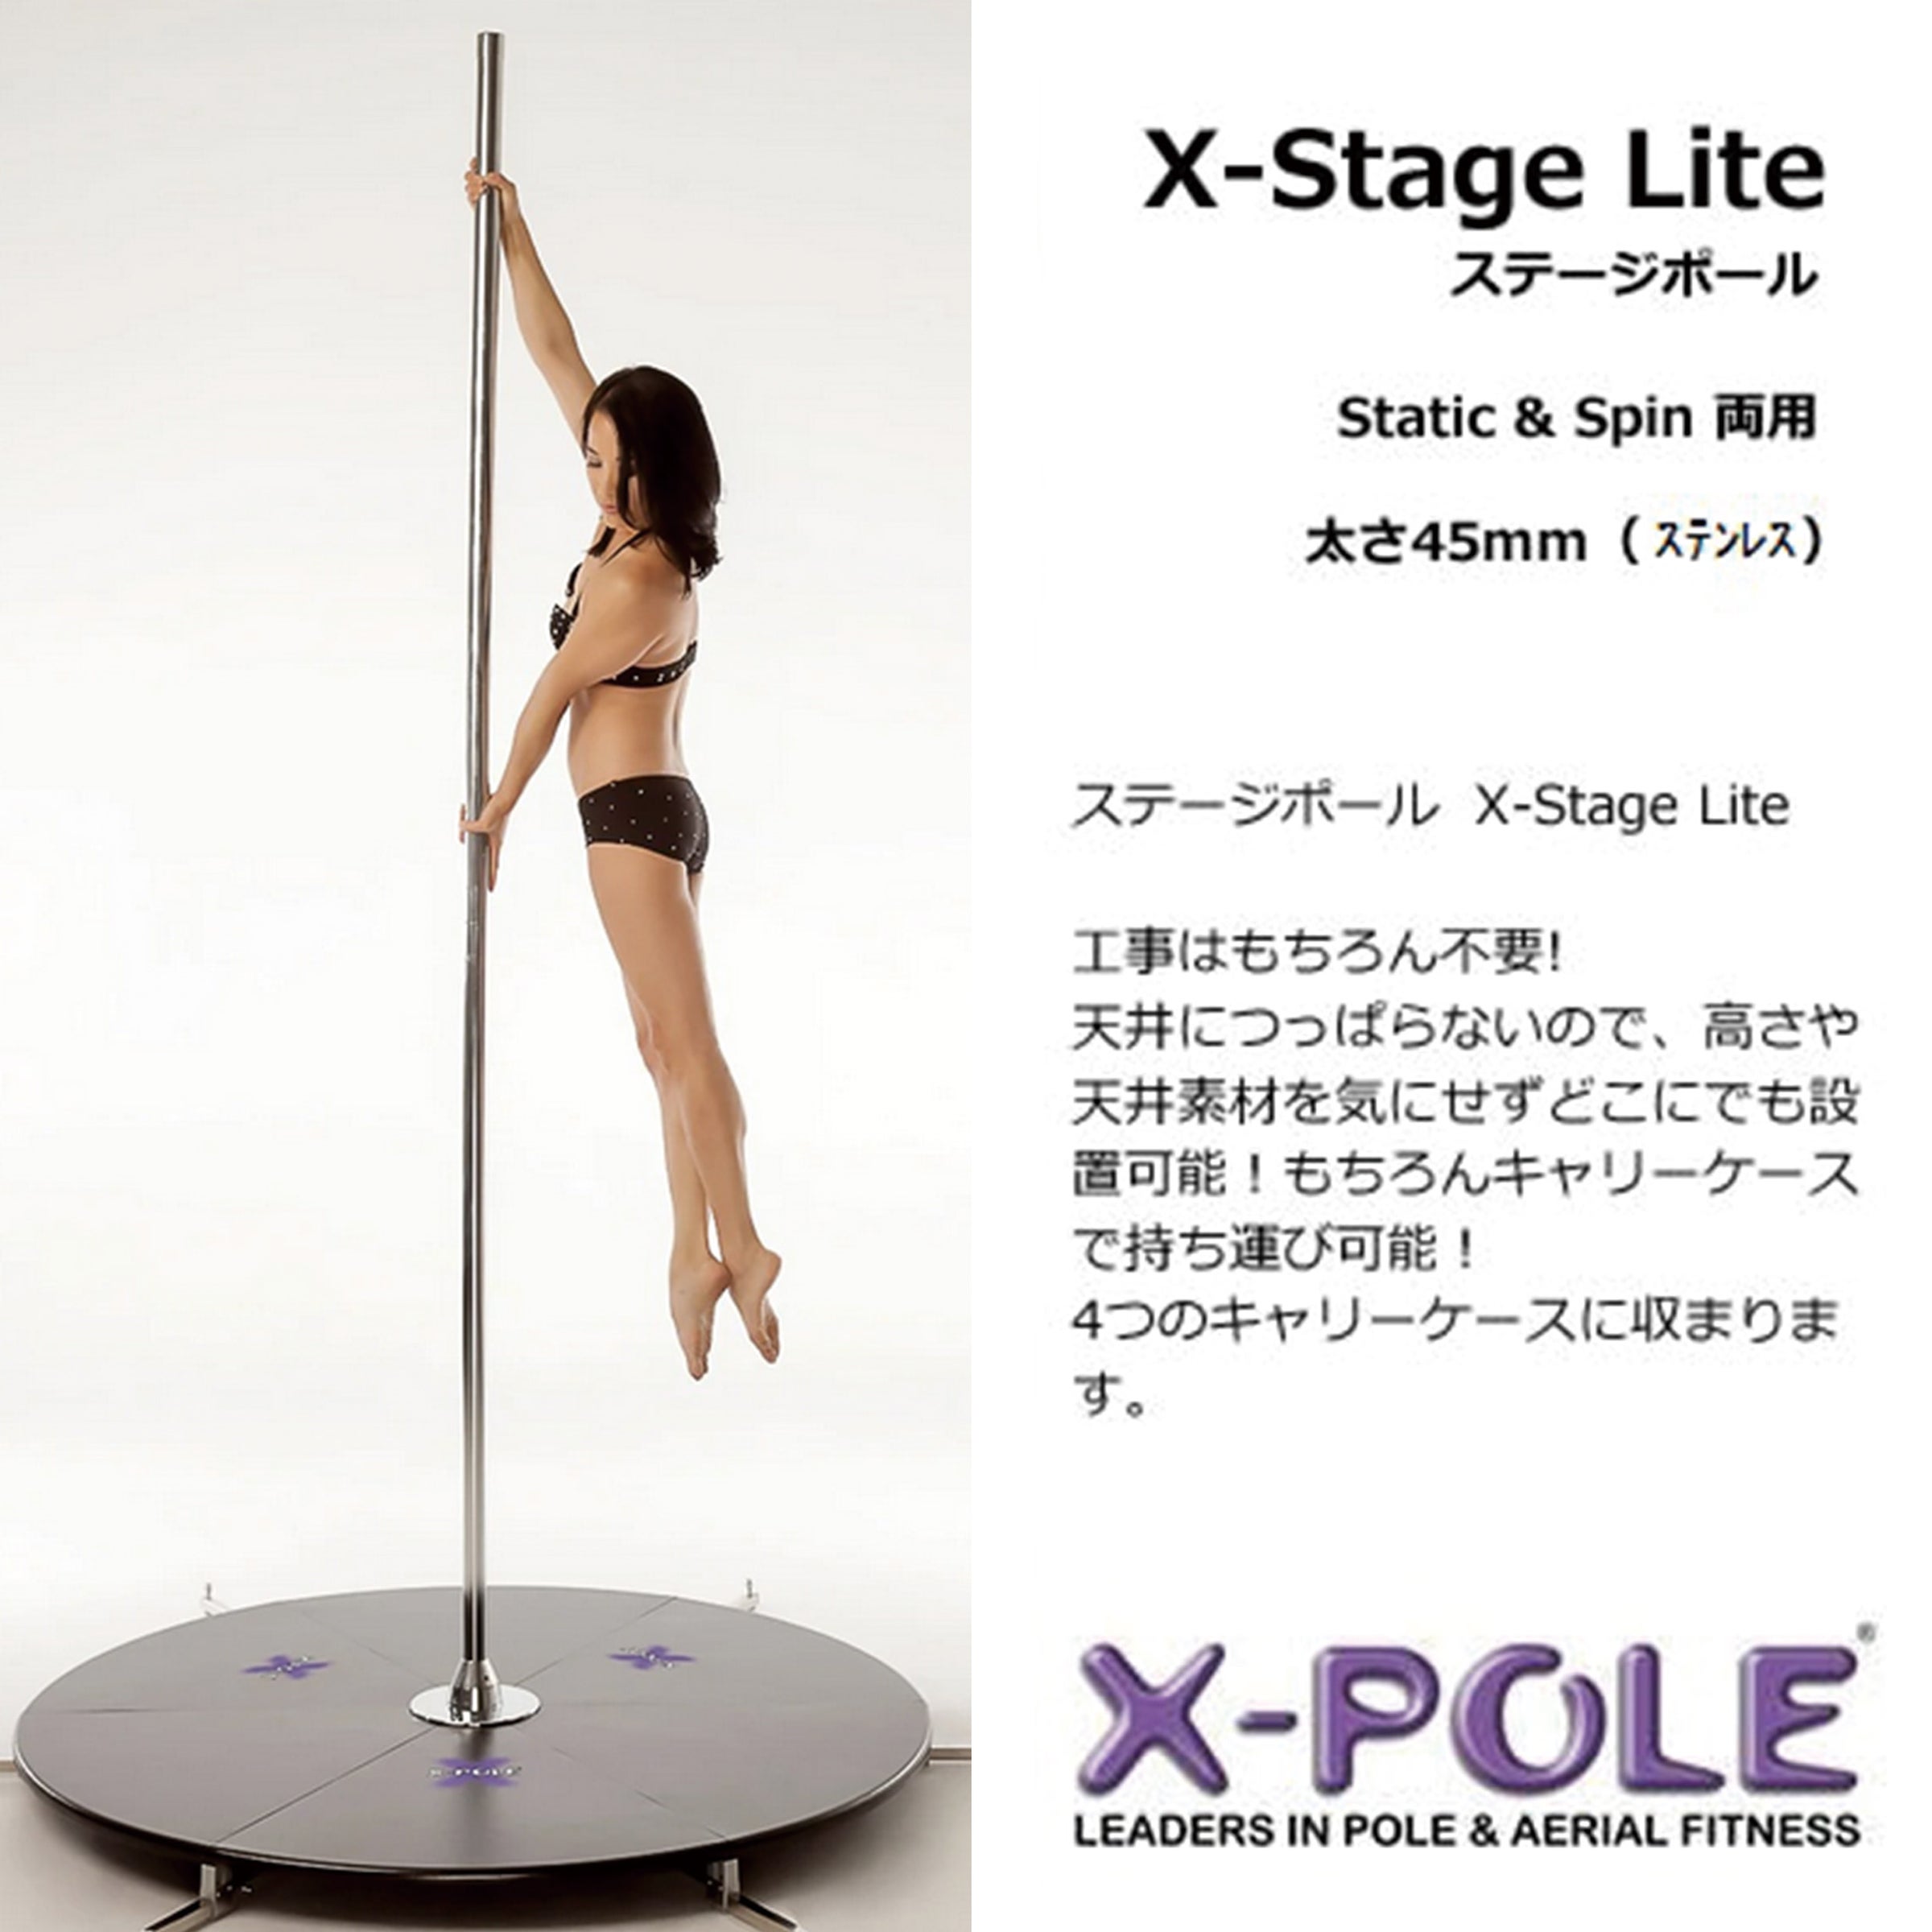 X-POLE | X-POLE日本正規販売店 ポールダンス用ポール・関連商品